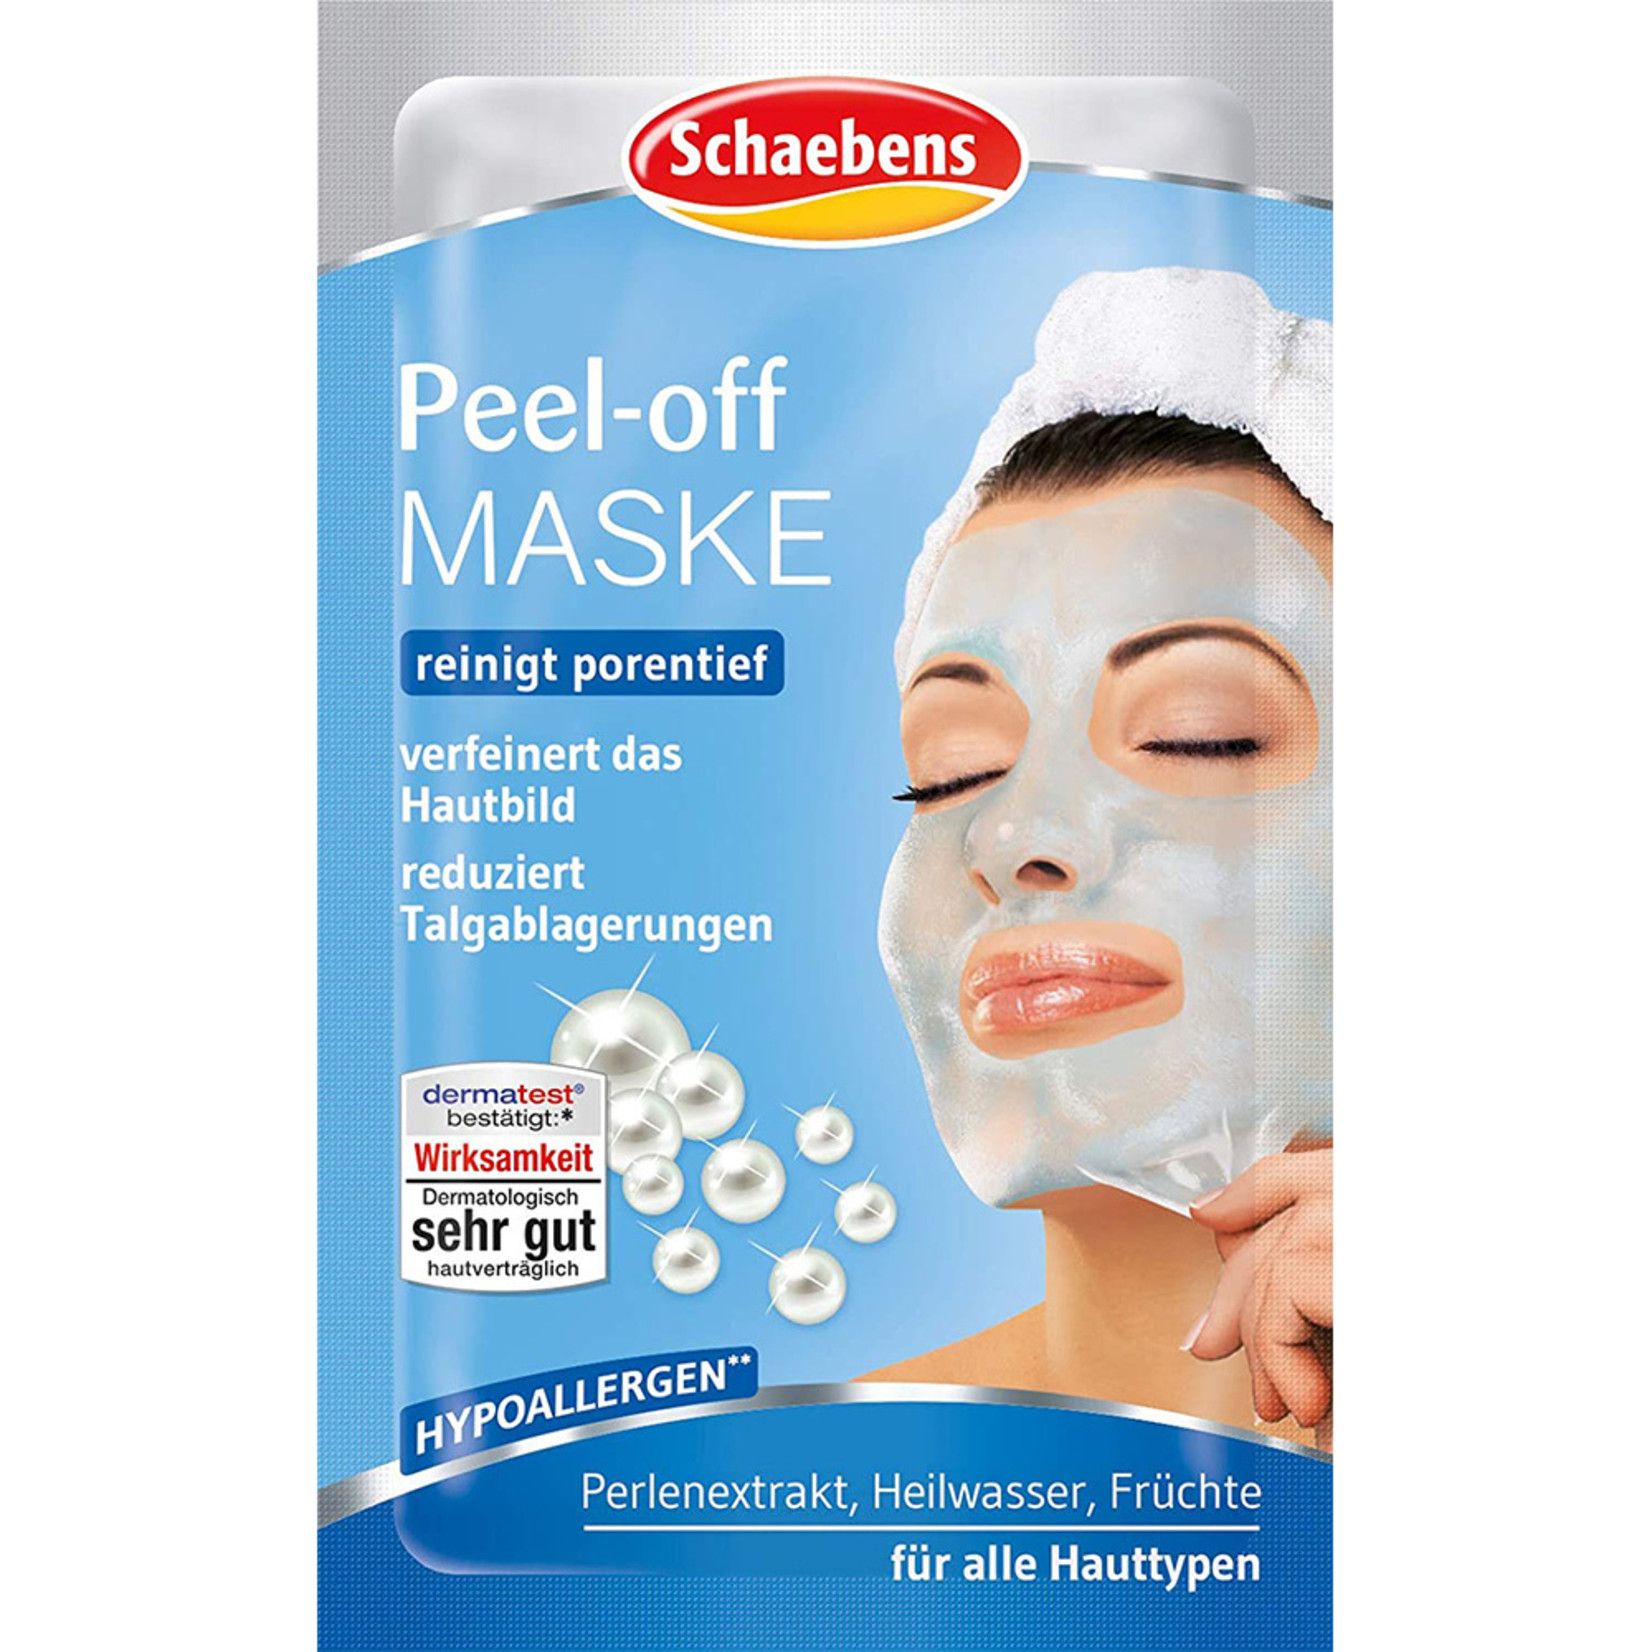 Peel-off Maske